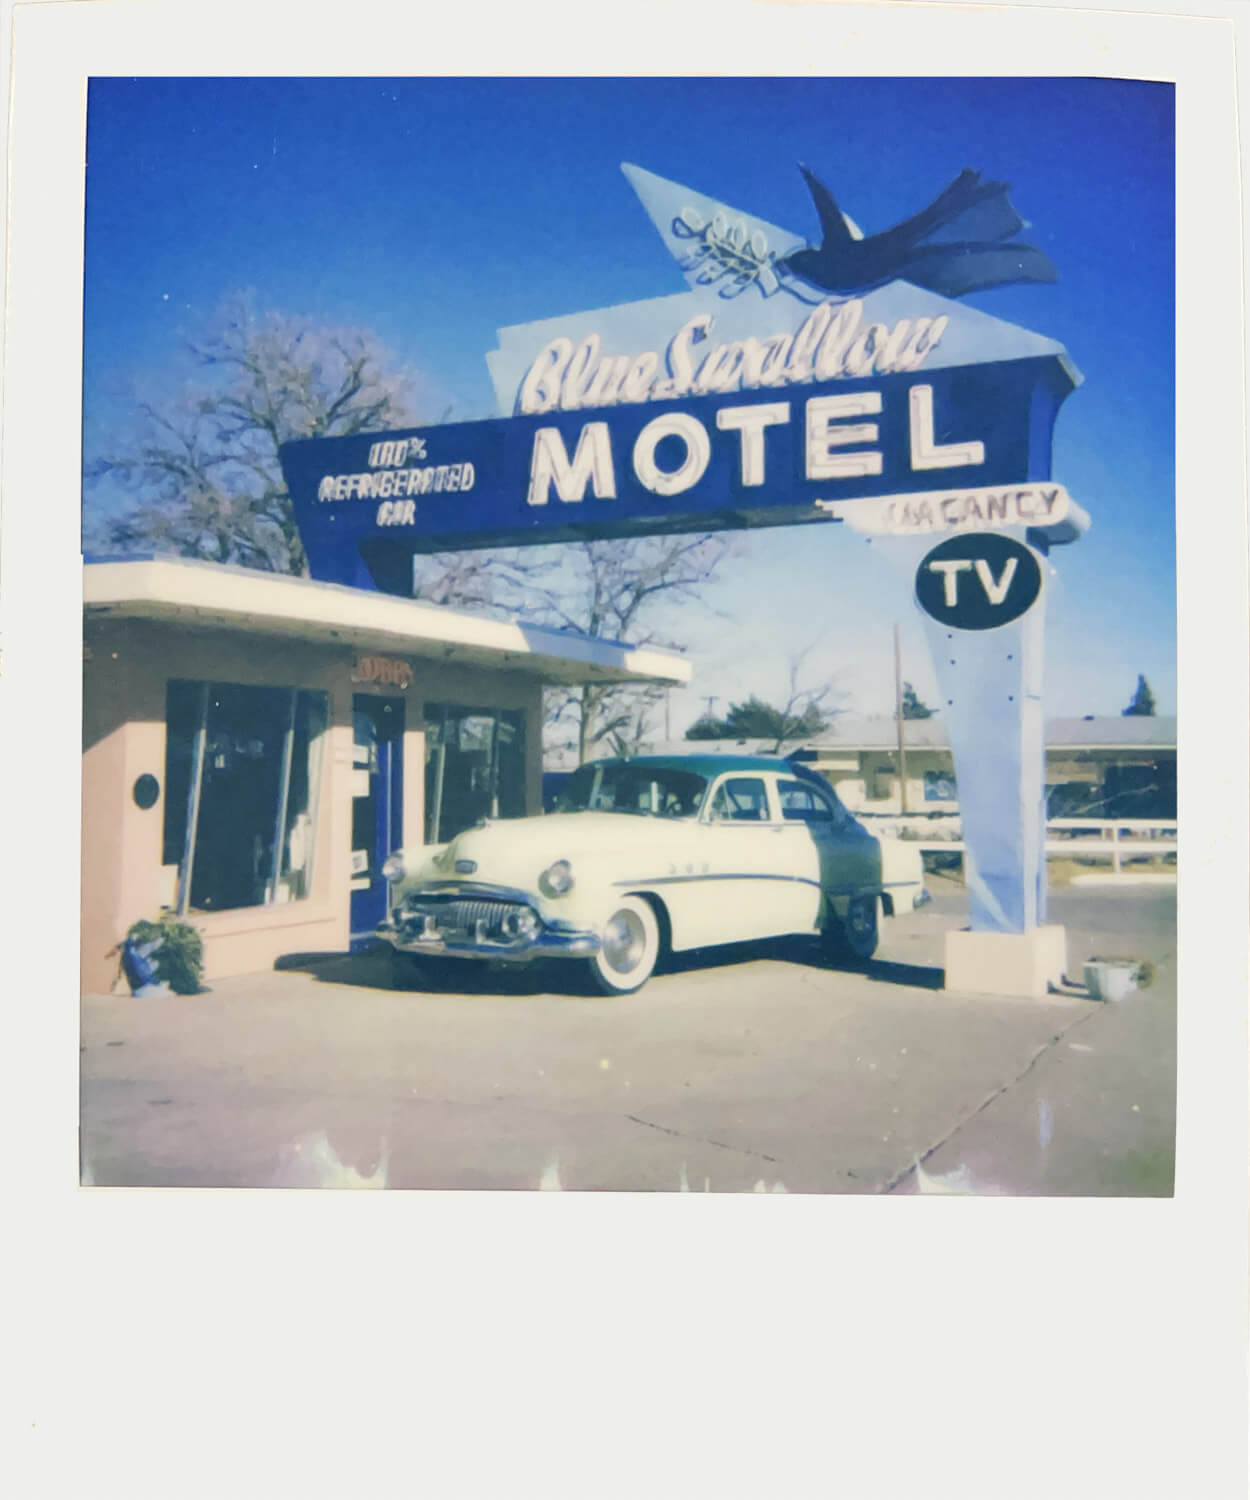 Polaroid 600 - Blue Swallow Motel - Matt Andrews